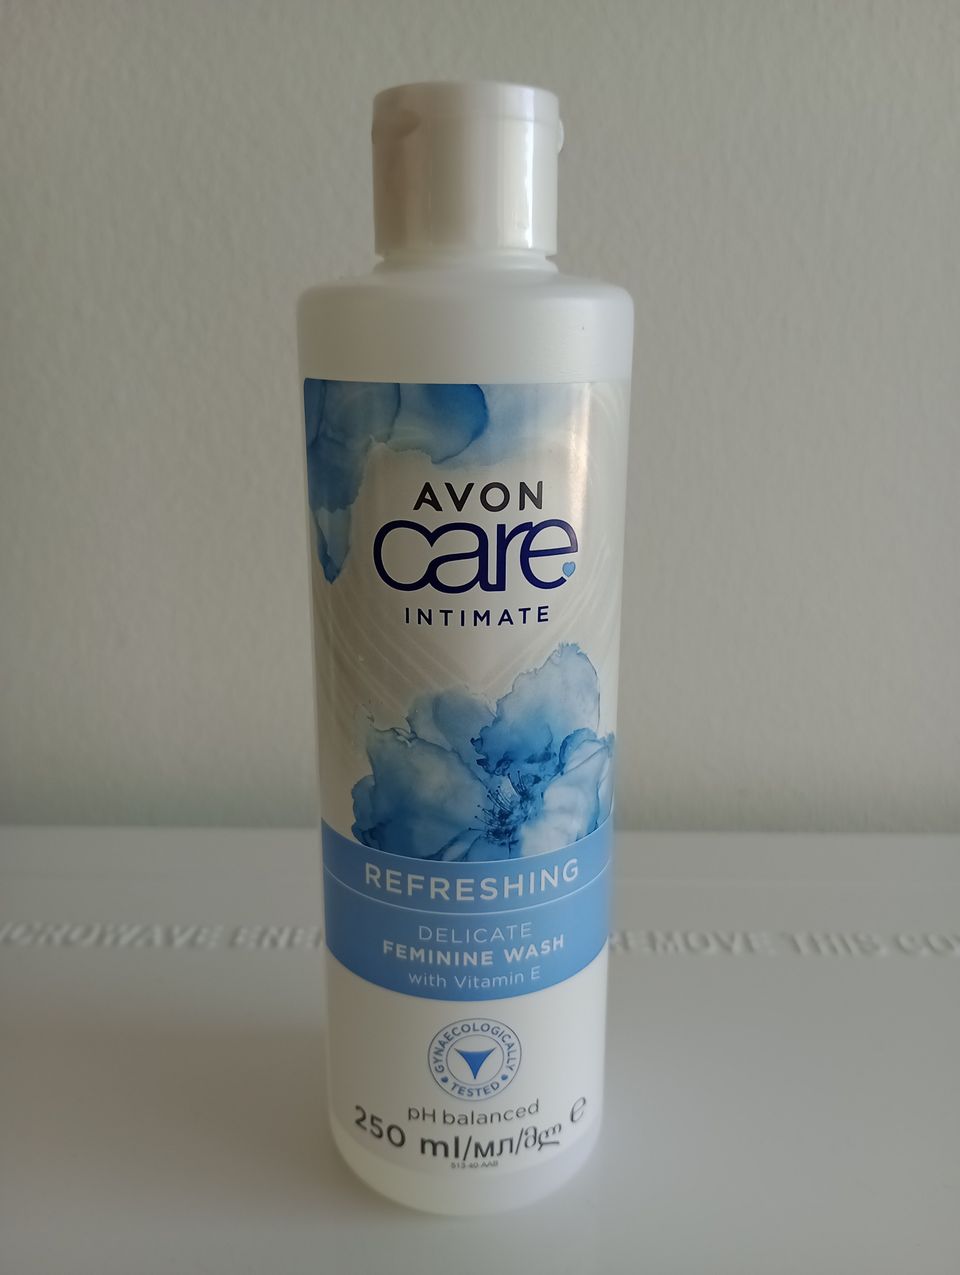 Avon Care Intimate Refreshing